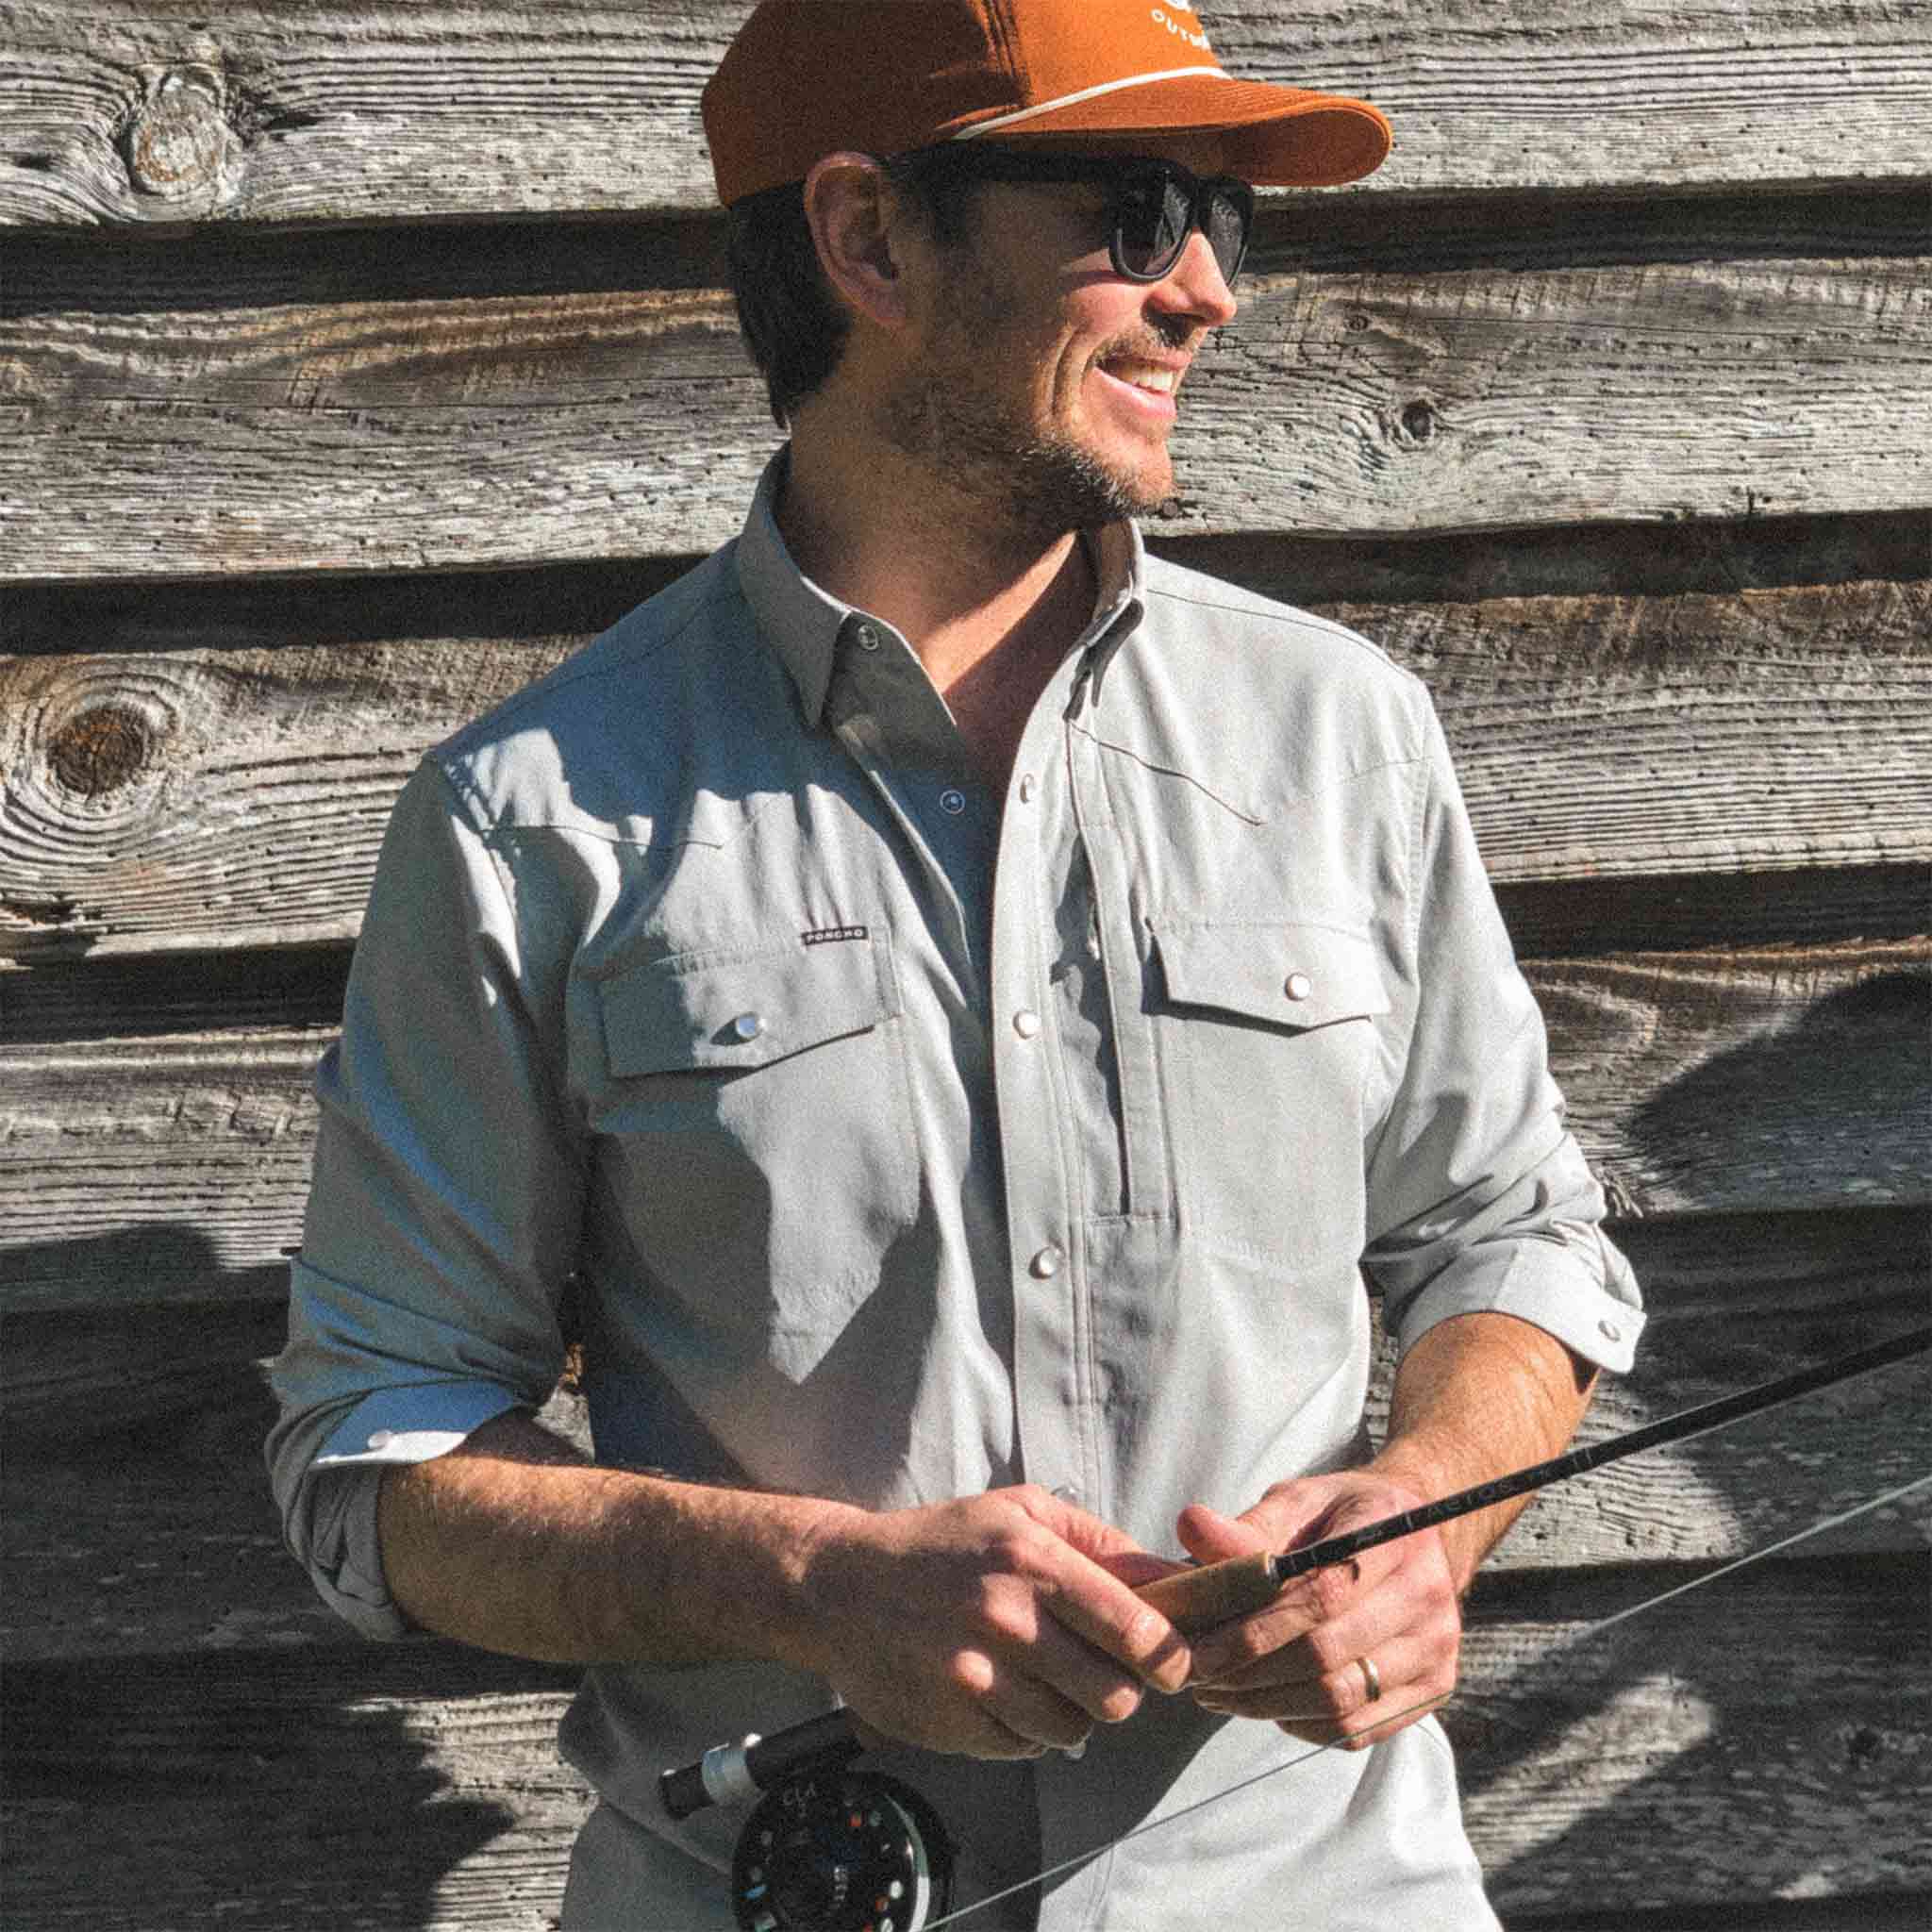 Man in San Saba shirt with Orange Hat smiling holding fishing rod